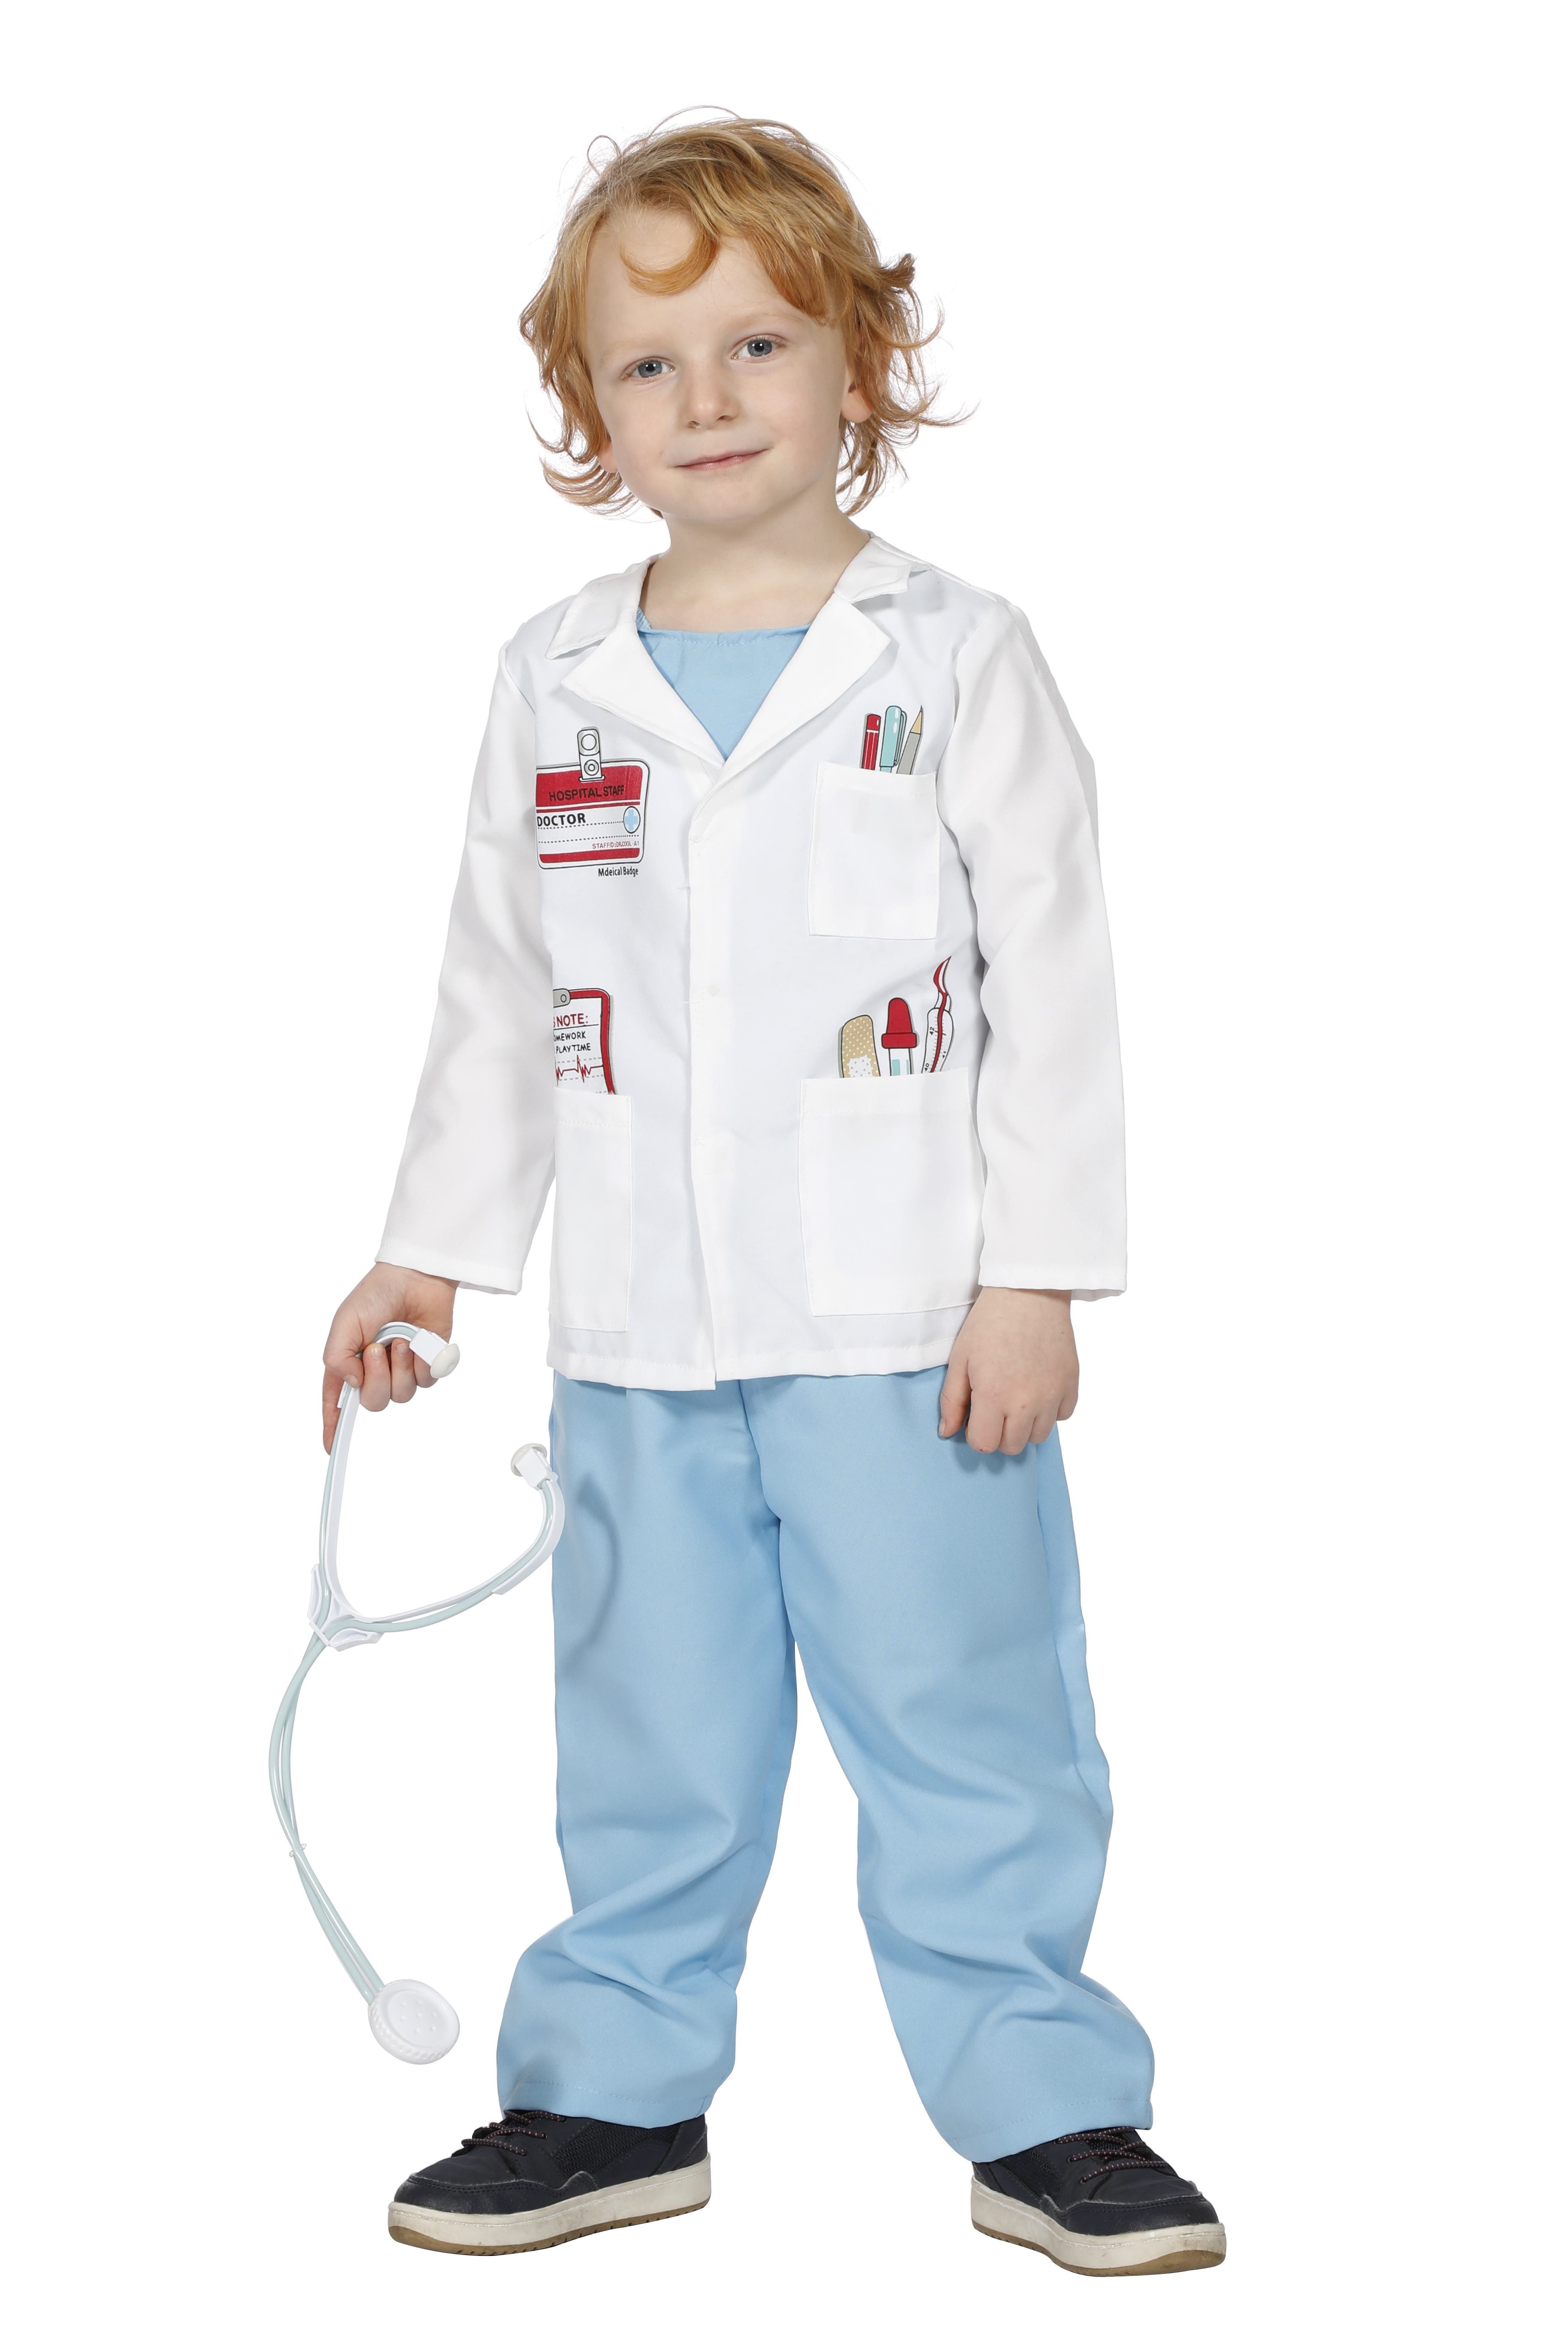 Déguisement médecin urgentiste enfant